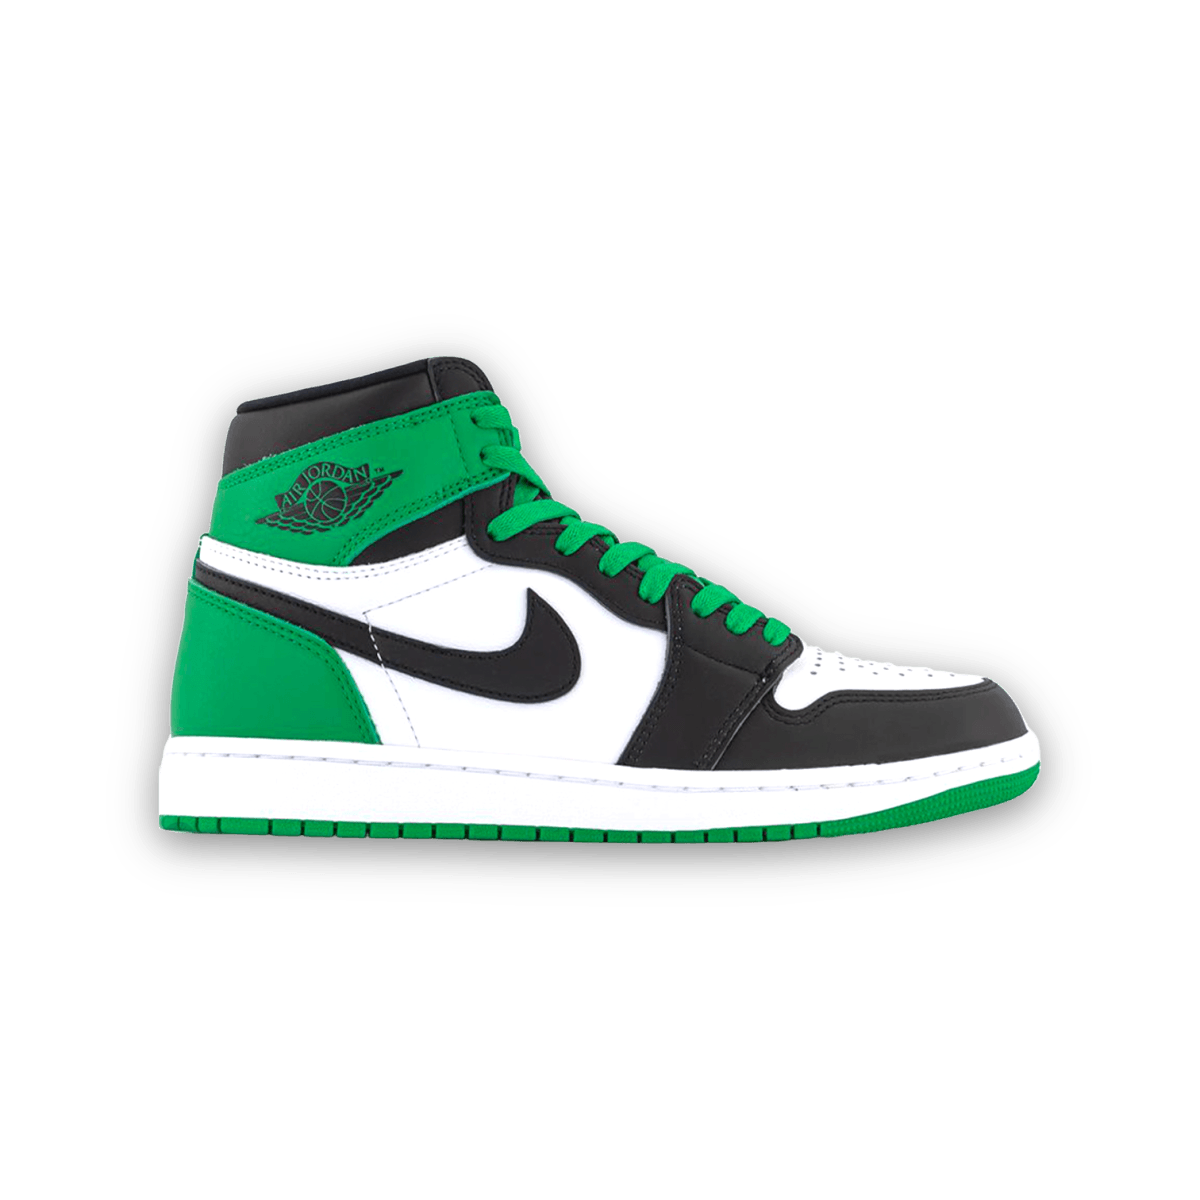 Air Jordan 1 High OG Lucky Green - Gently Enjoyed (Used) Men 11 - High Sneaker - Jordan - Jawns on Fire - sneakers